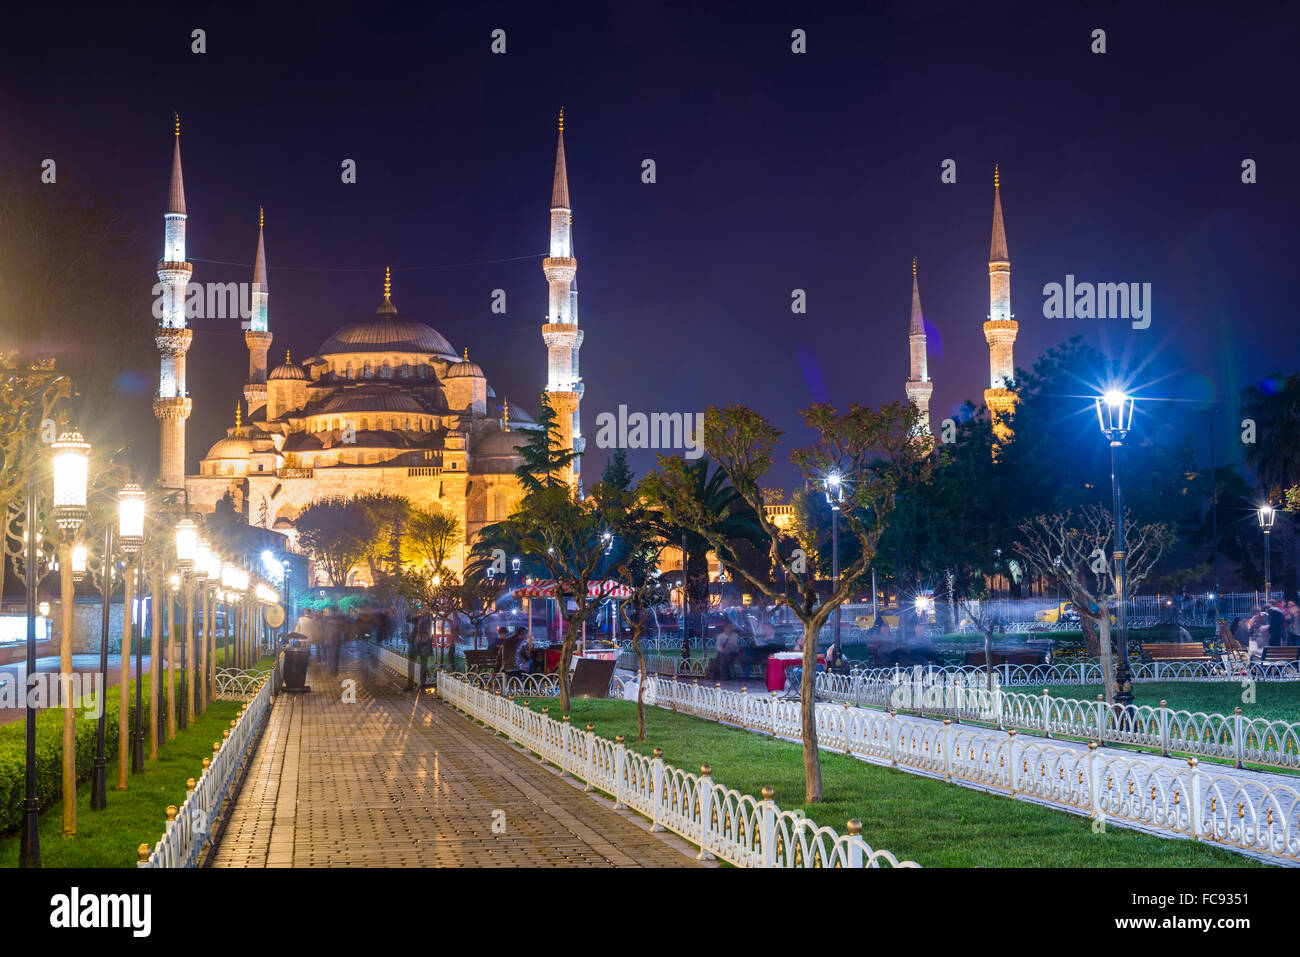 La Moschea Blu (Sultan Ahmed Moschea), il Sito Patrimonio Mondiale dell'UNESCO, in Piazza Sultanahmet Park e dei giardini di notte, Istanbul, Turchia Foto Stock